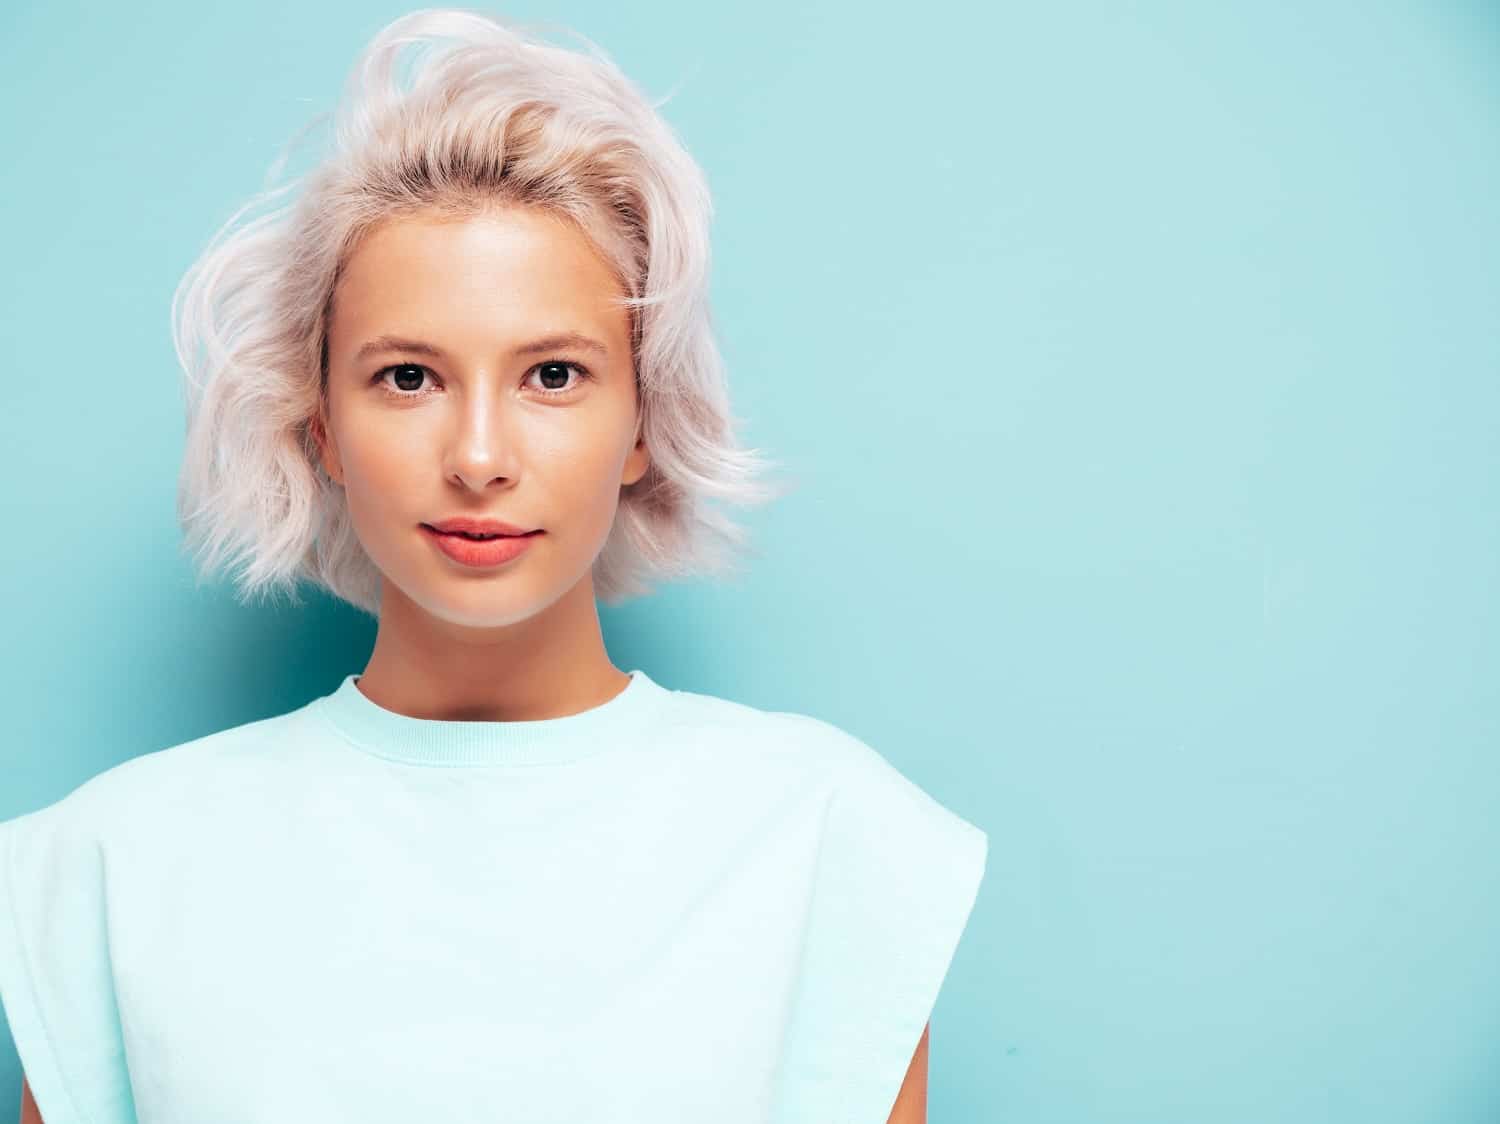 دلیل و عوامل تأثیرگذار سفید شدن موها